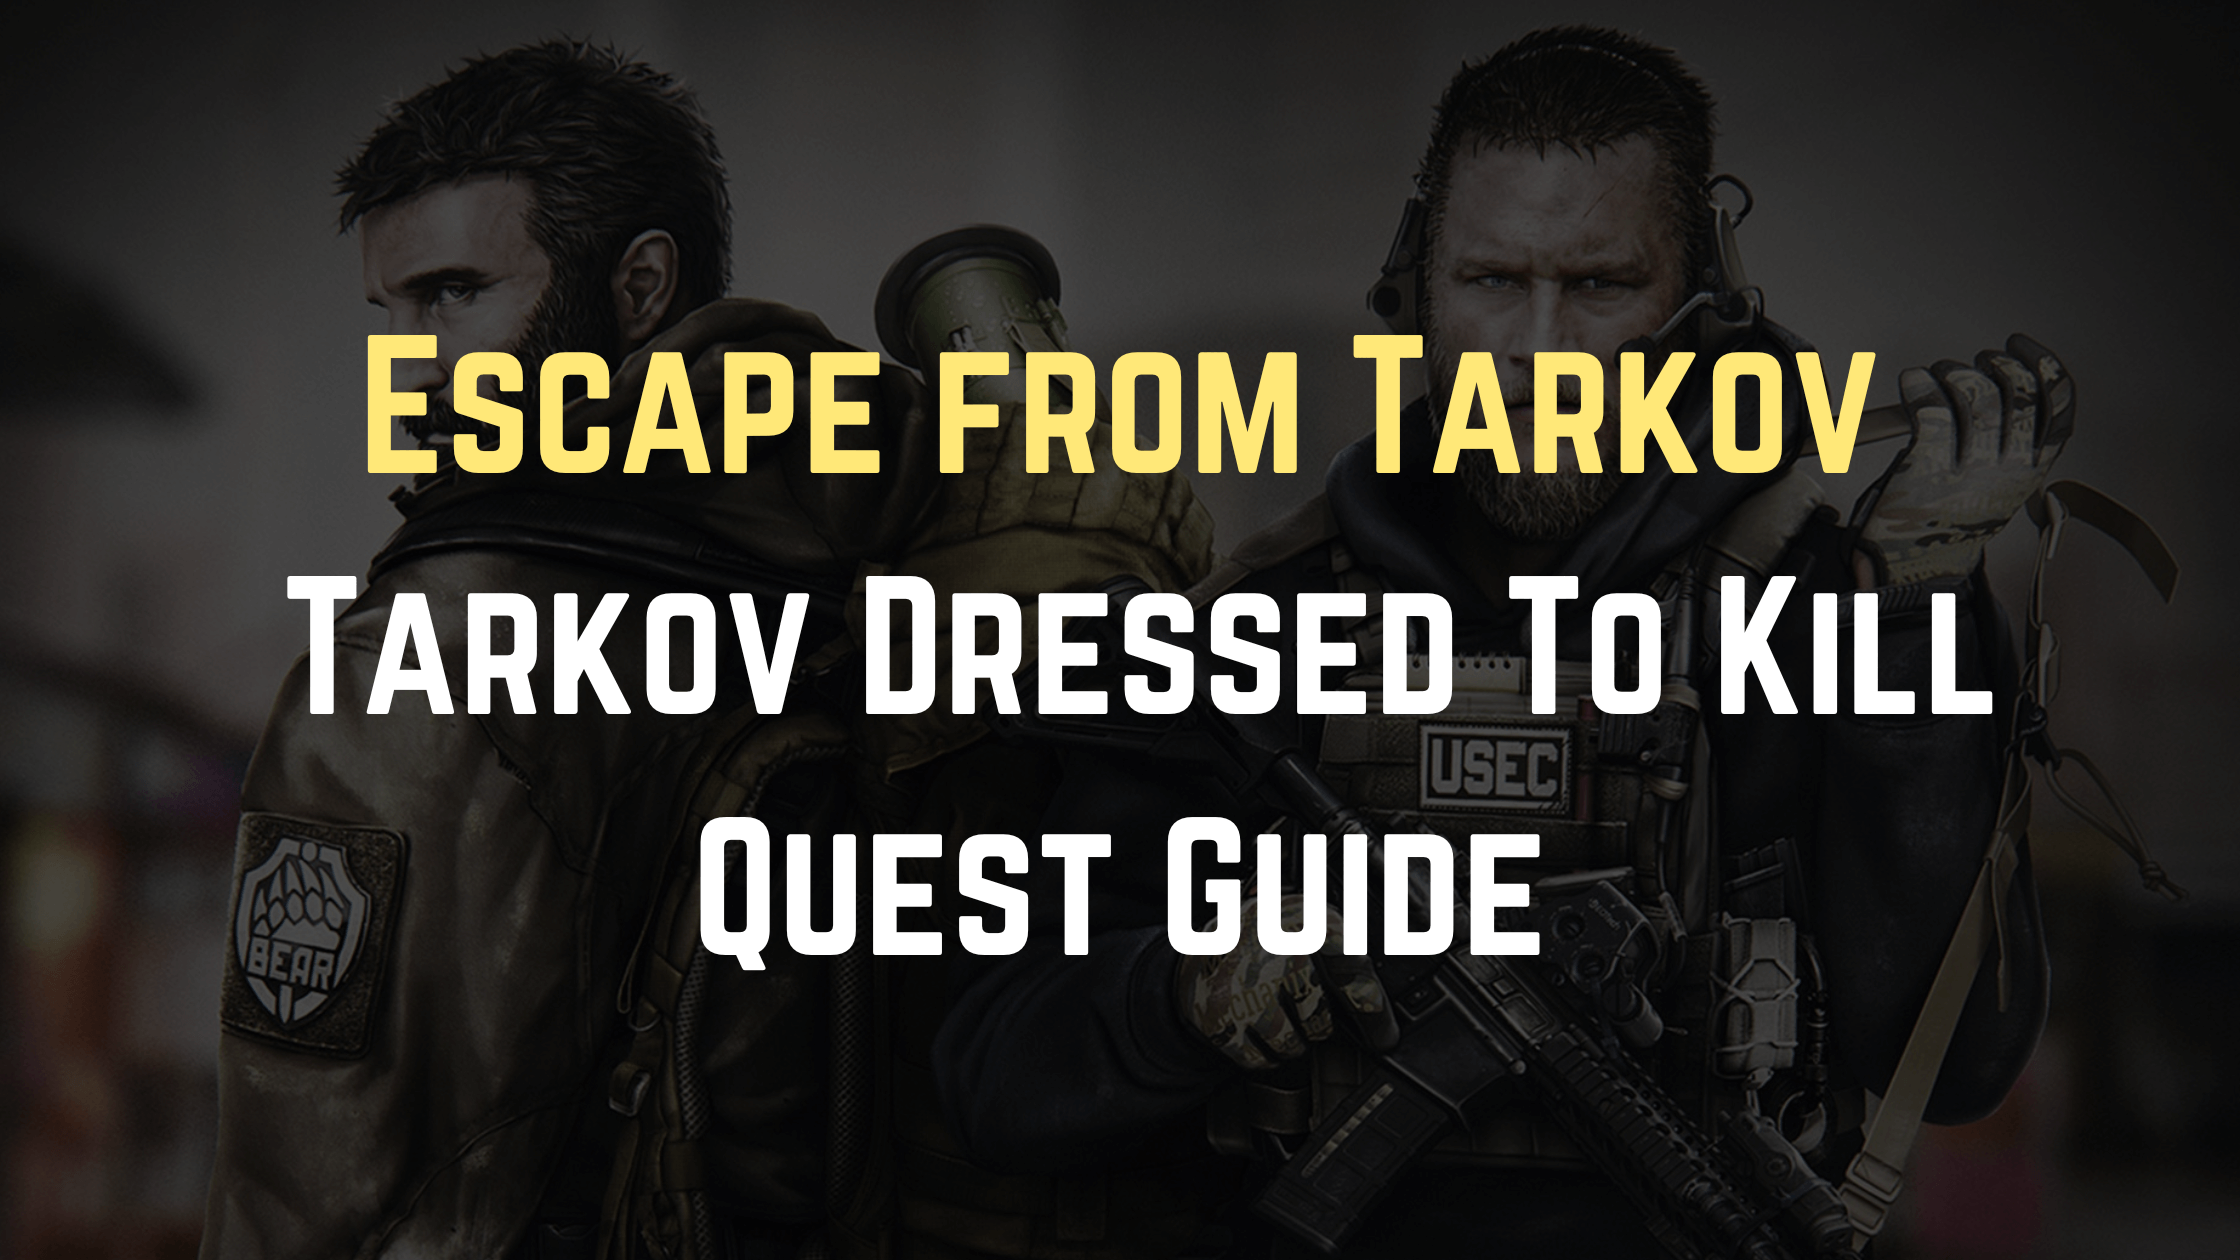 Tarkov Dressed to Kill